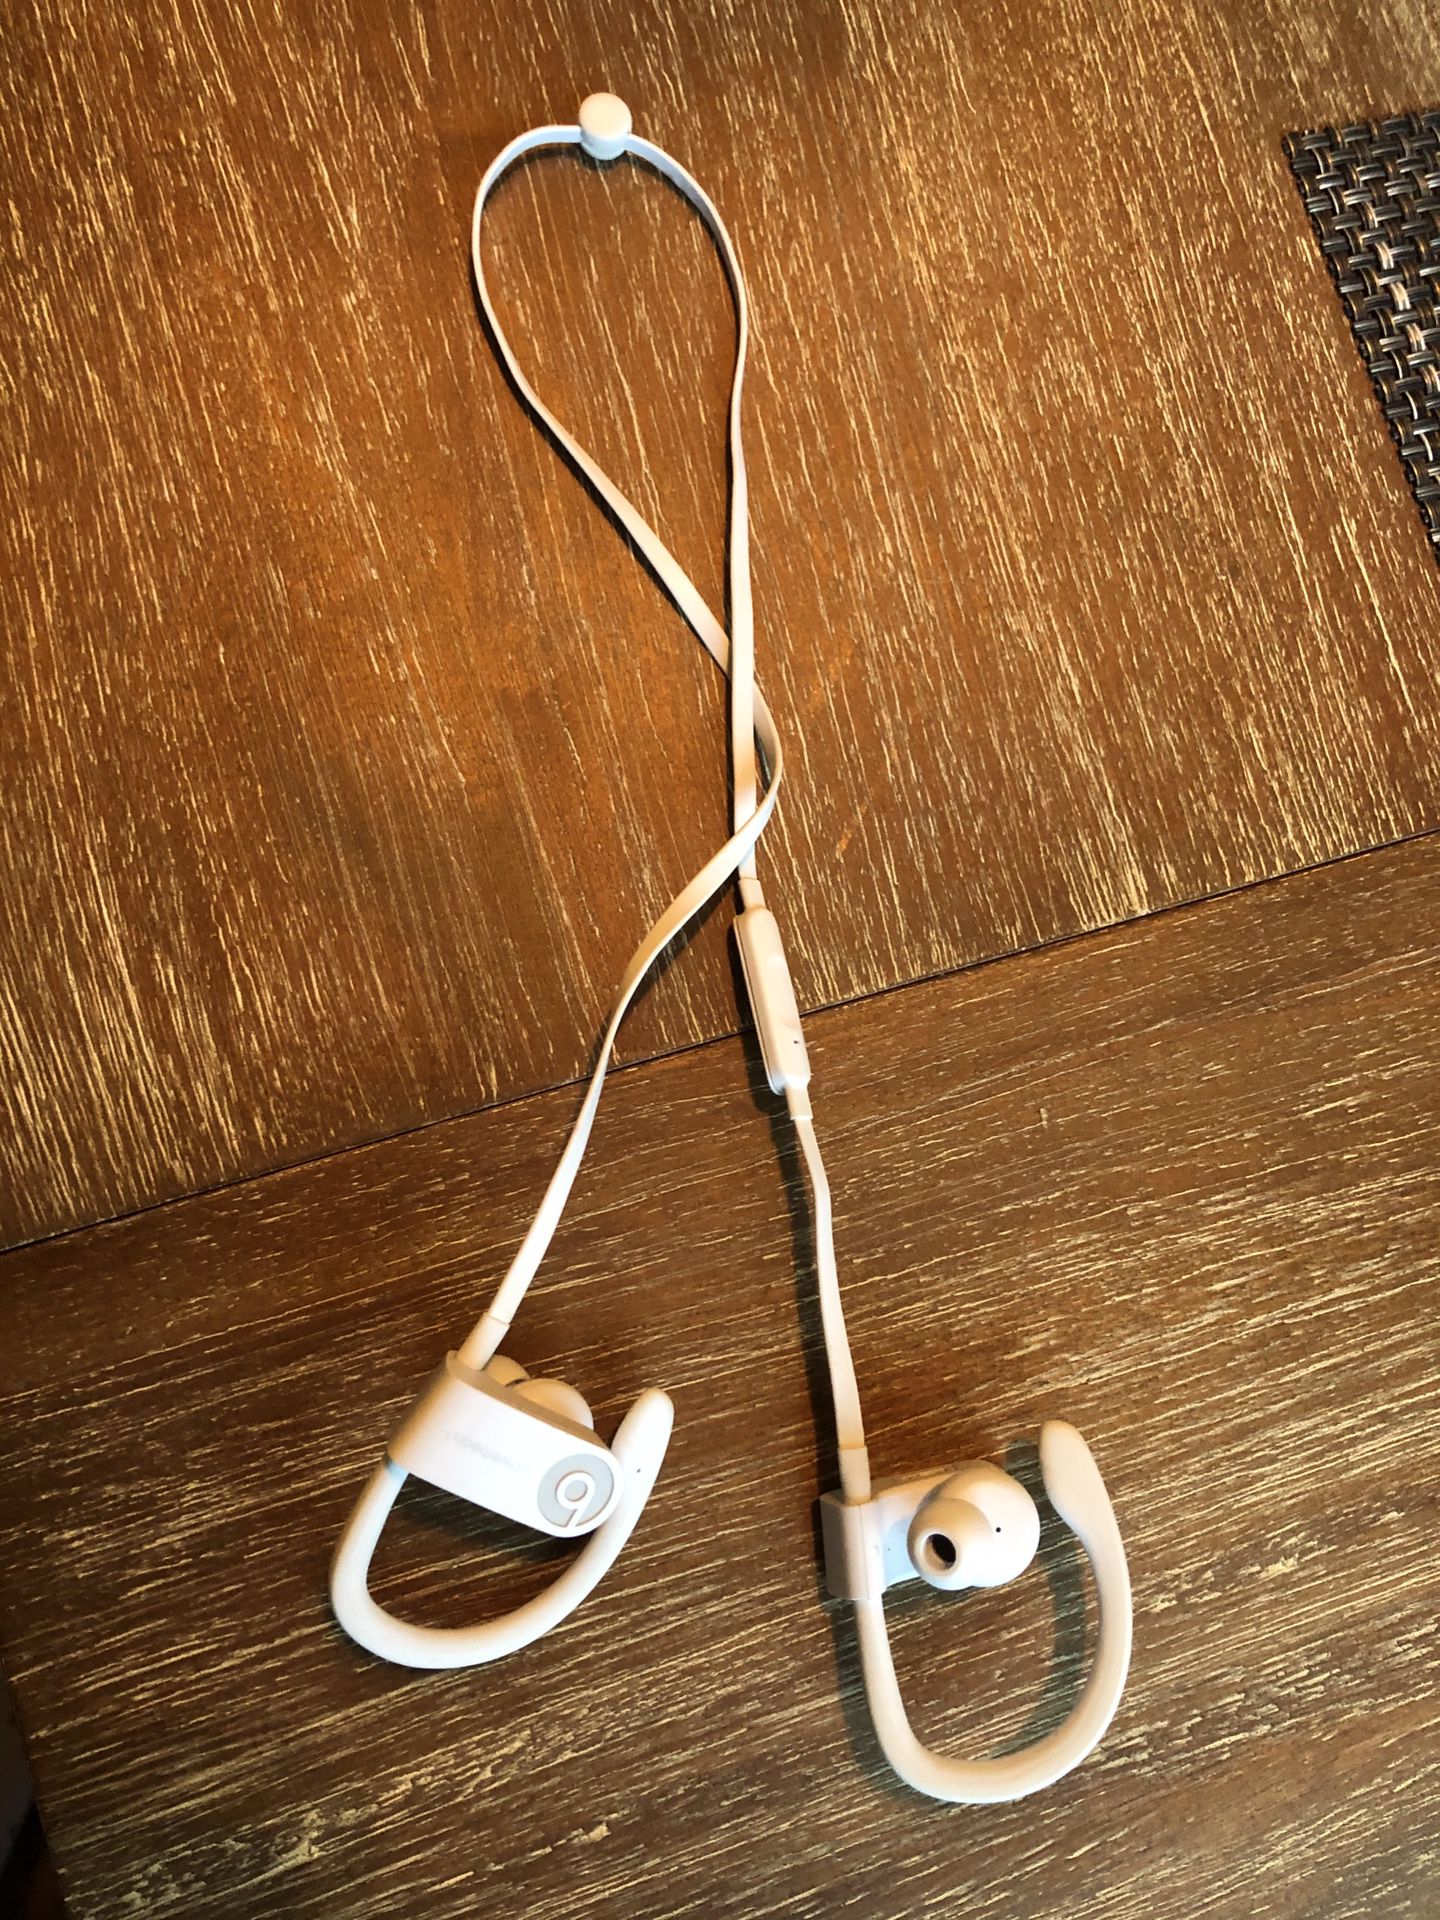 PowerBeats earphones